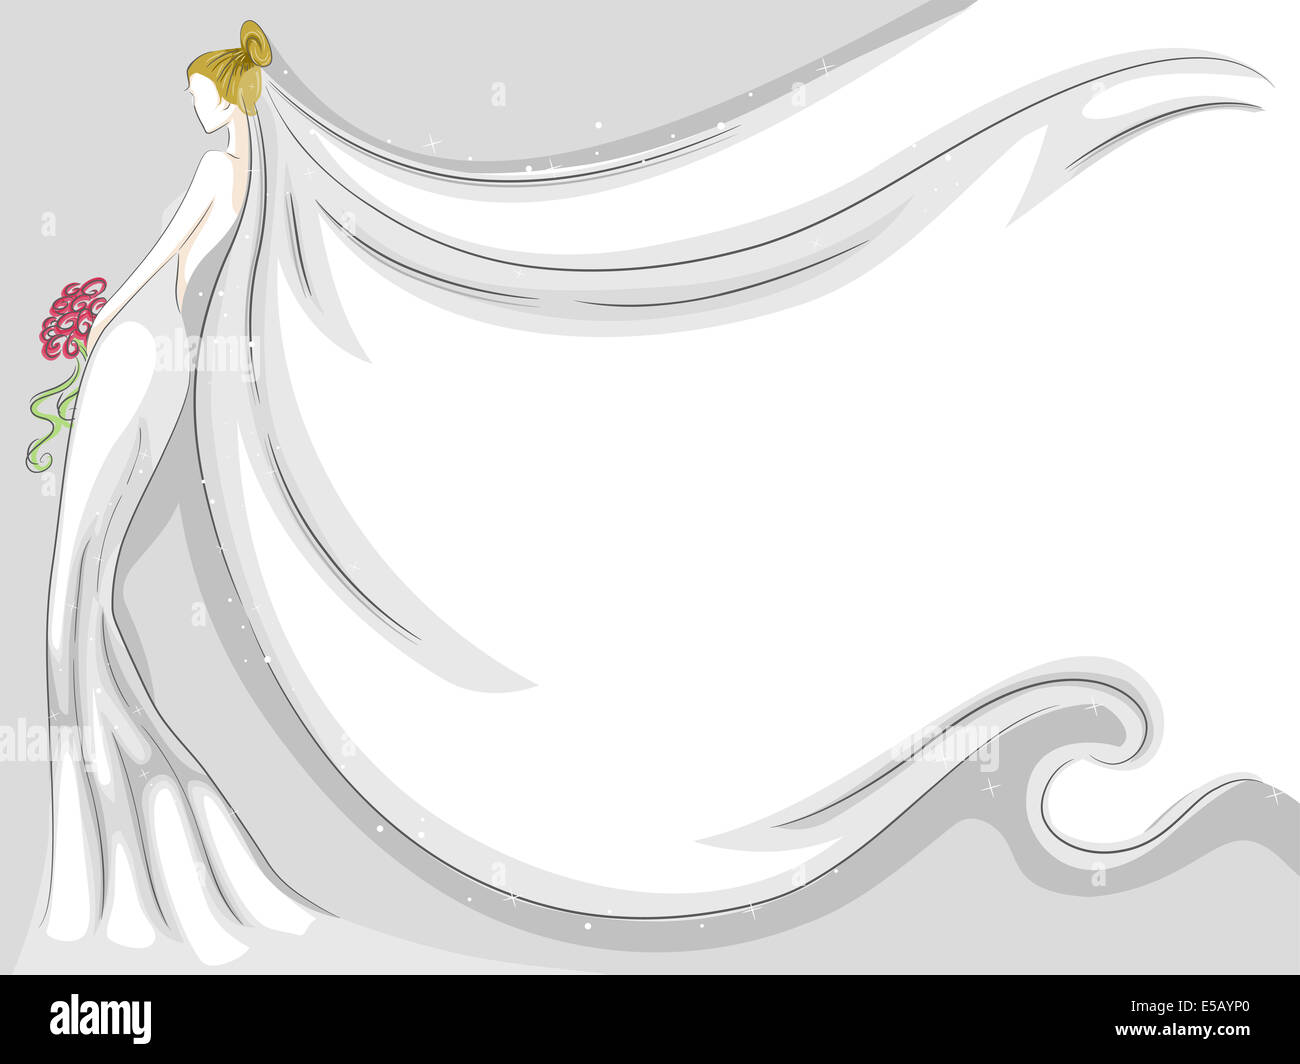 Hintergrund Illustration mit einem flatternden Brautschleier Stockfoto